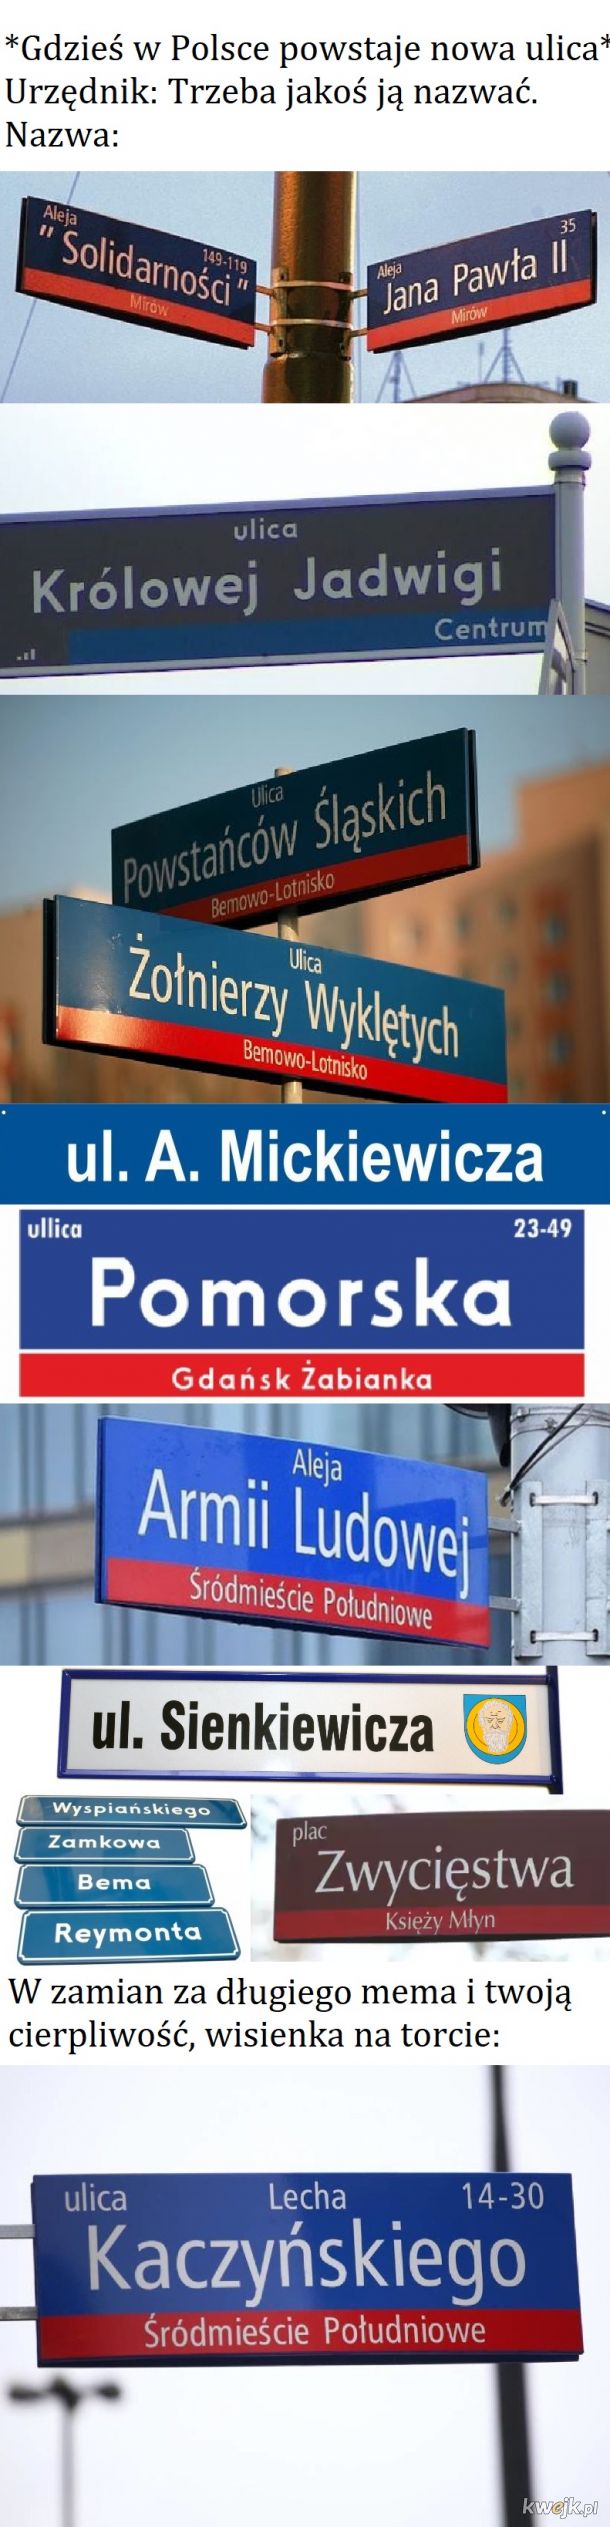 Polska kreatywnosc w nazewnictwie